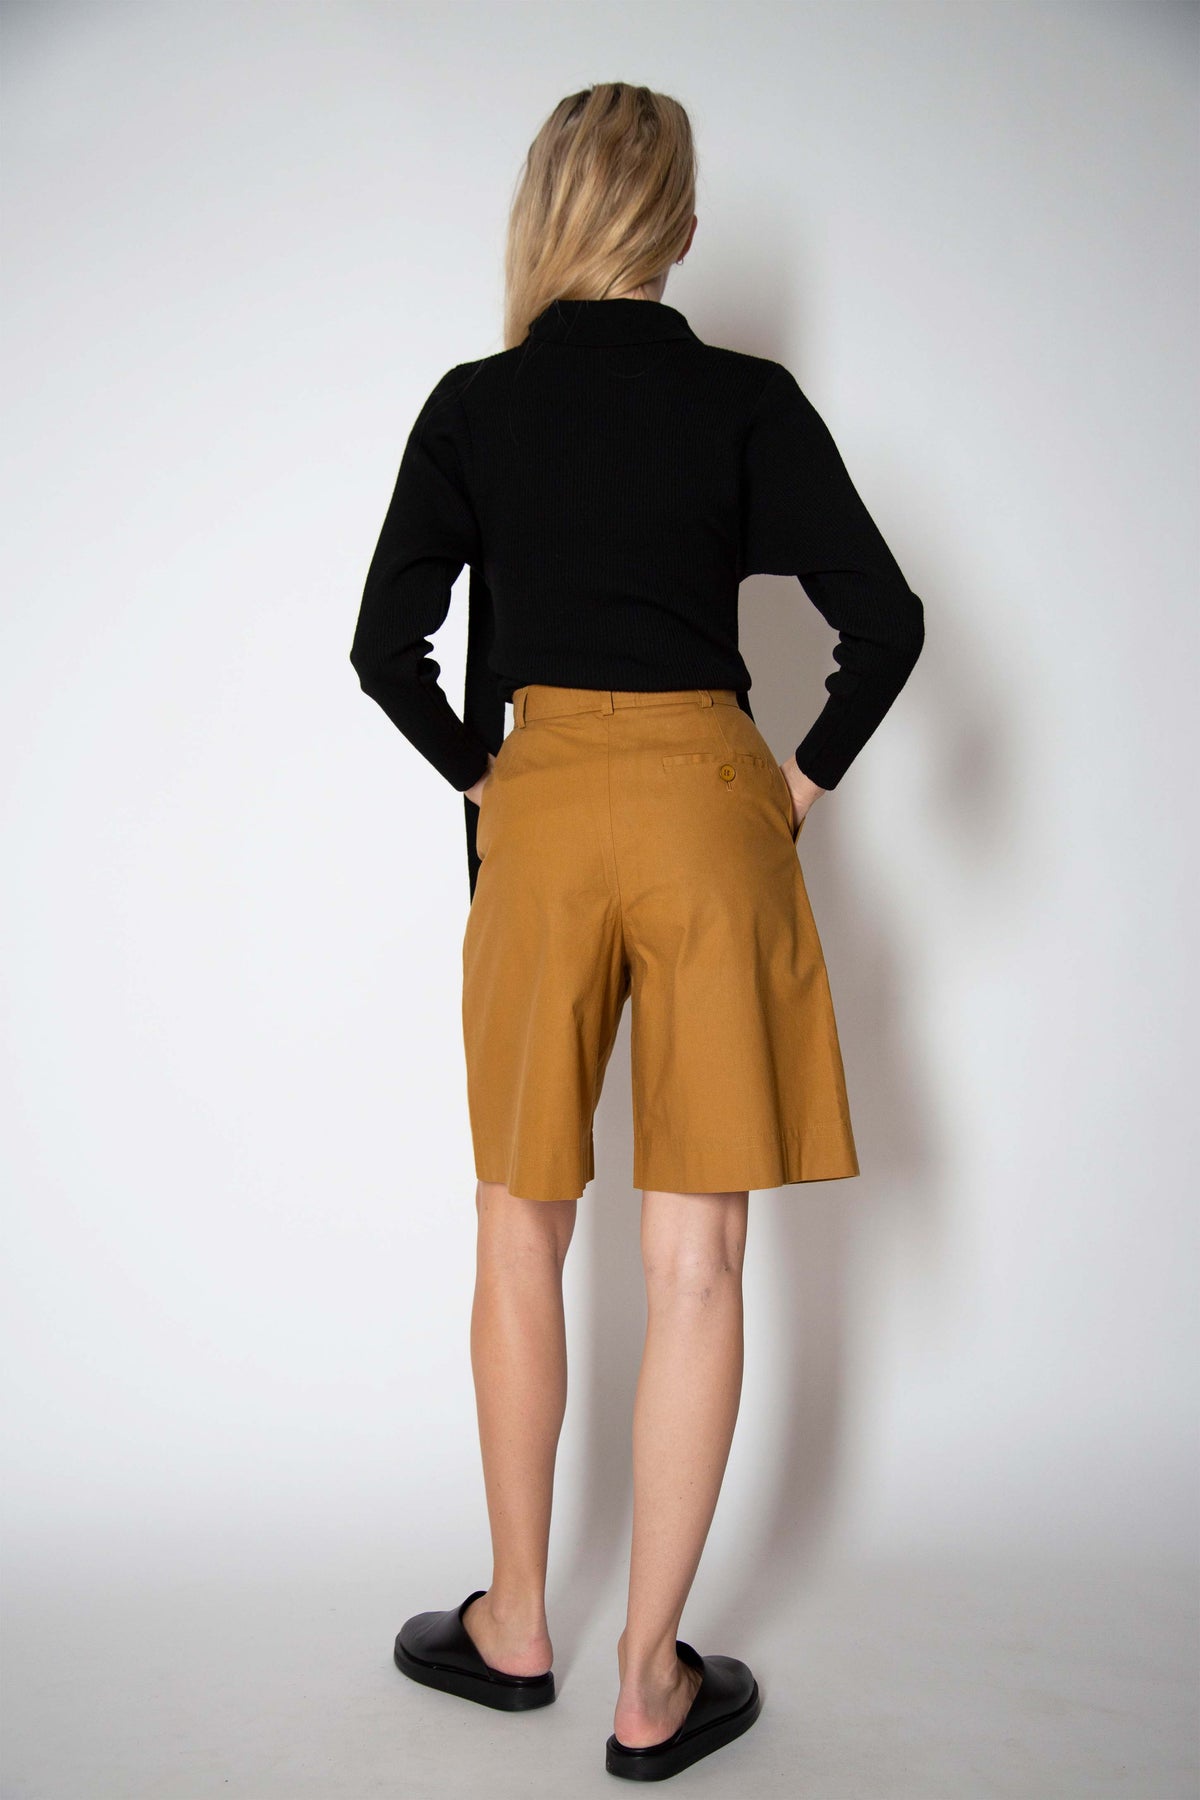 Yves Saint Laurent bermuda shorts